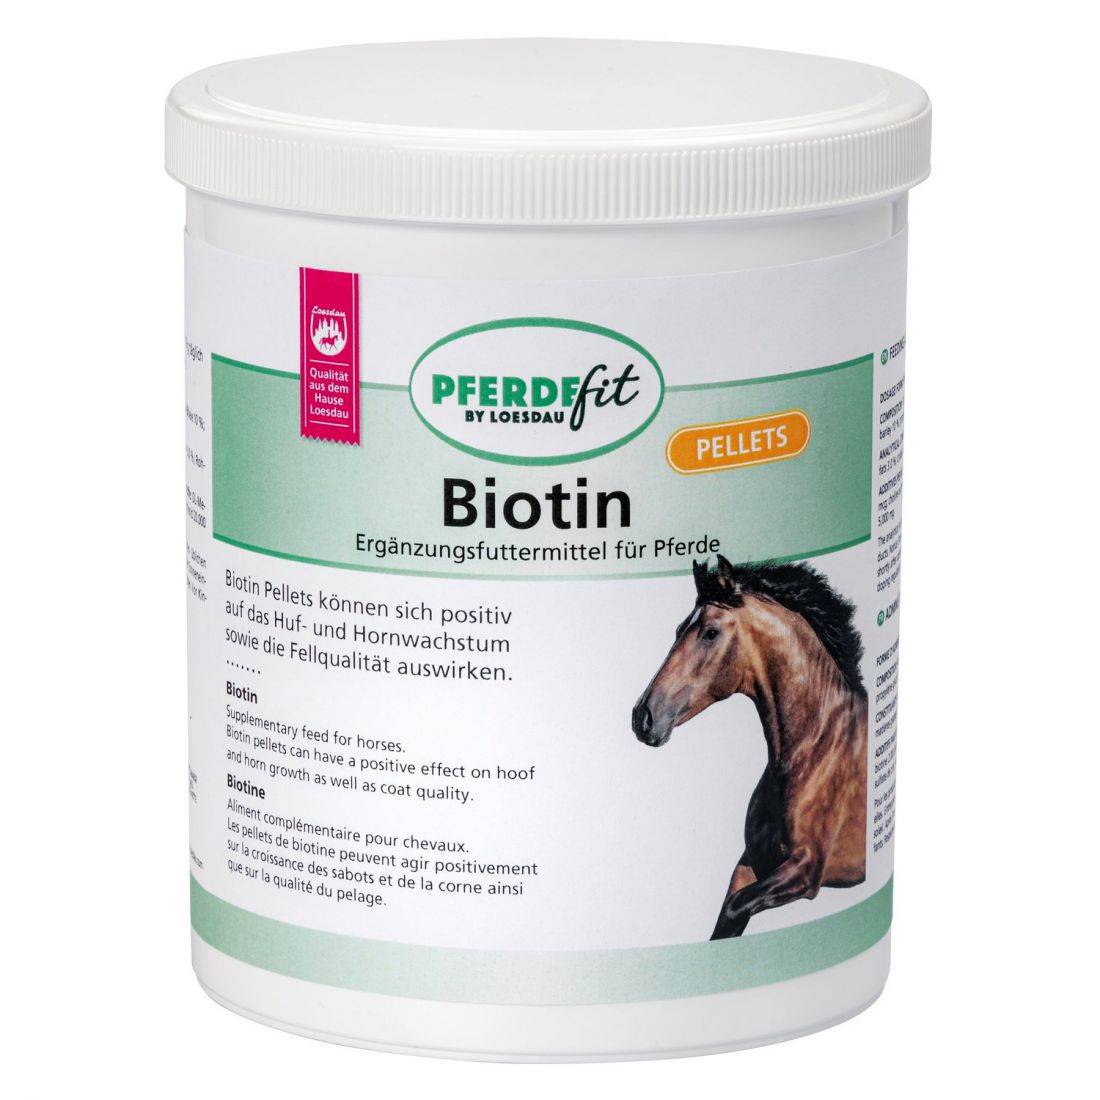 Biotin Pellet, Loesdau Horse-Fit